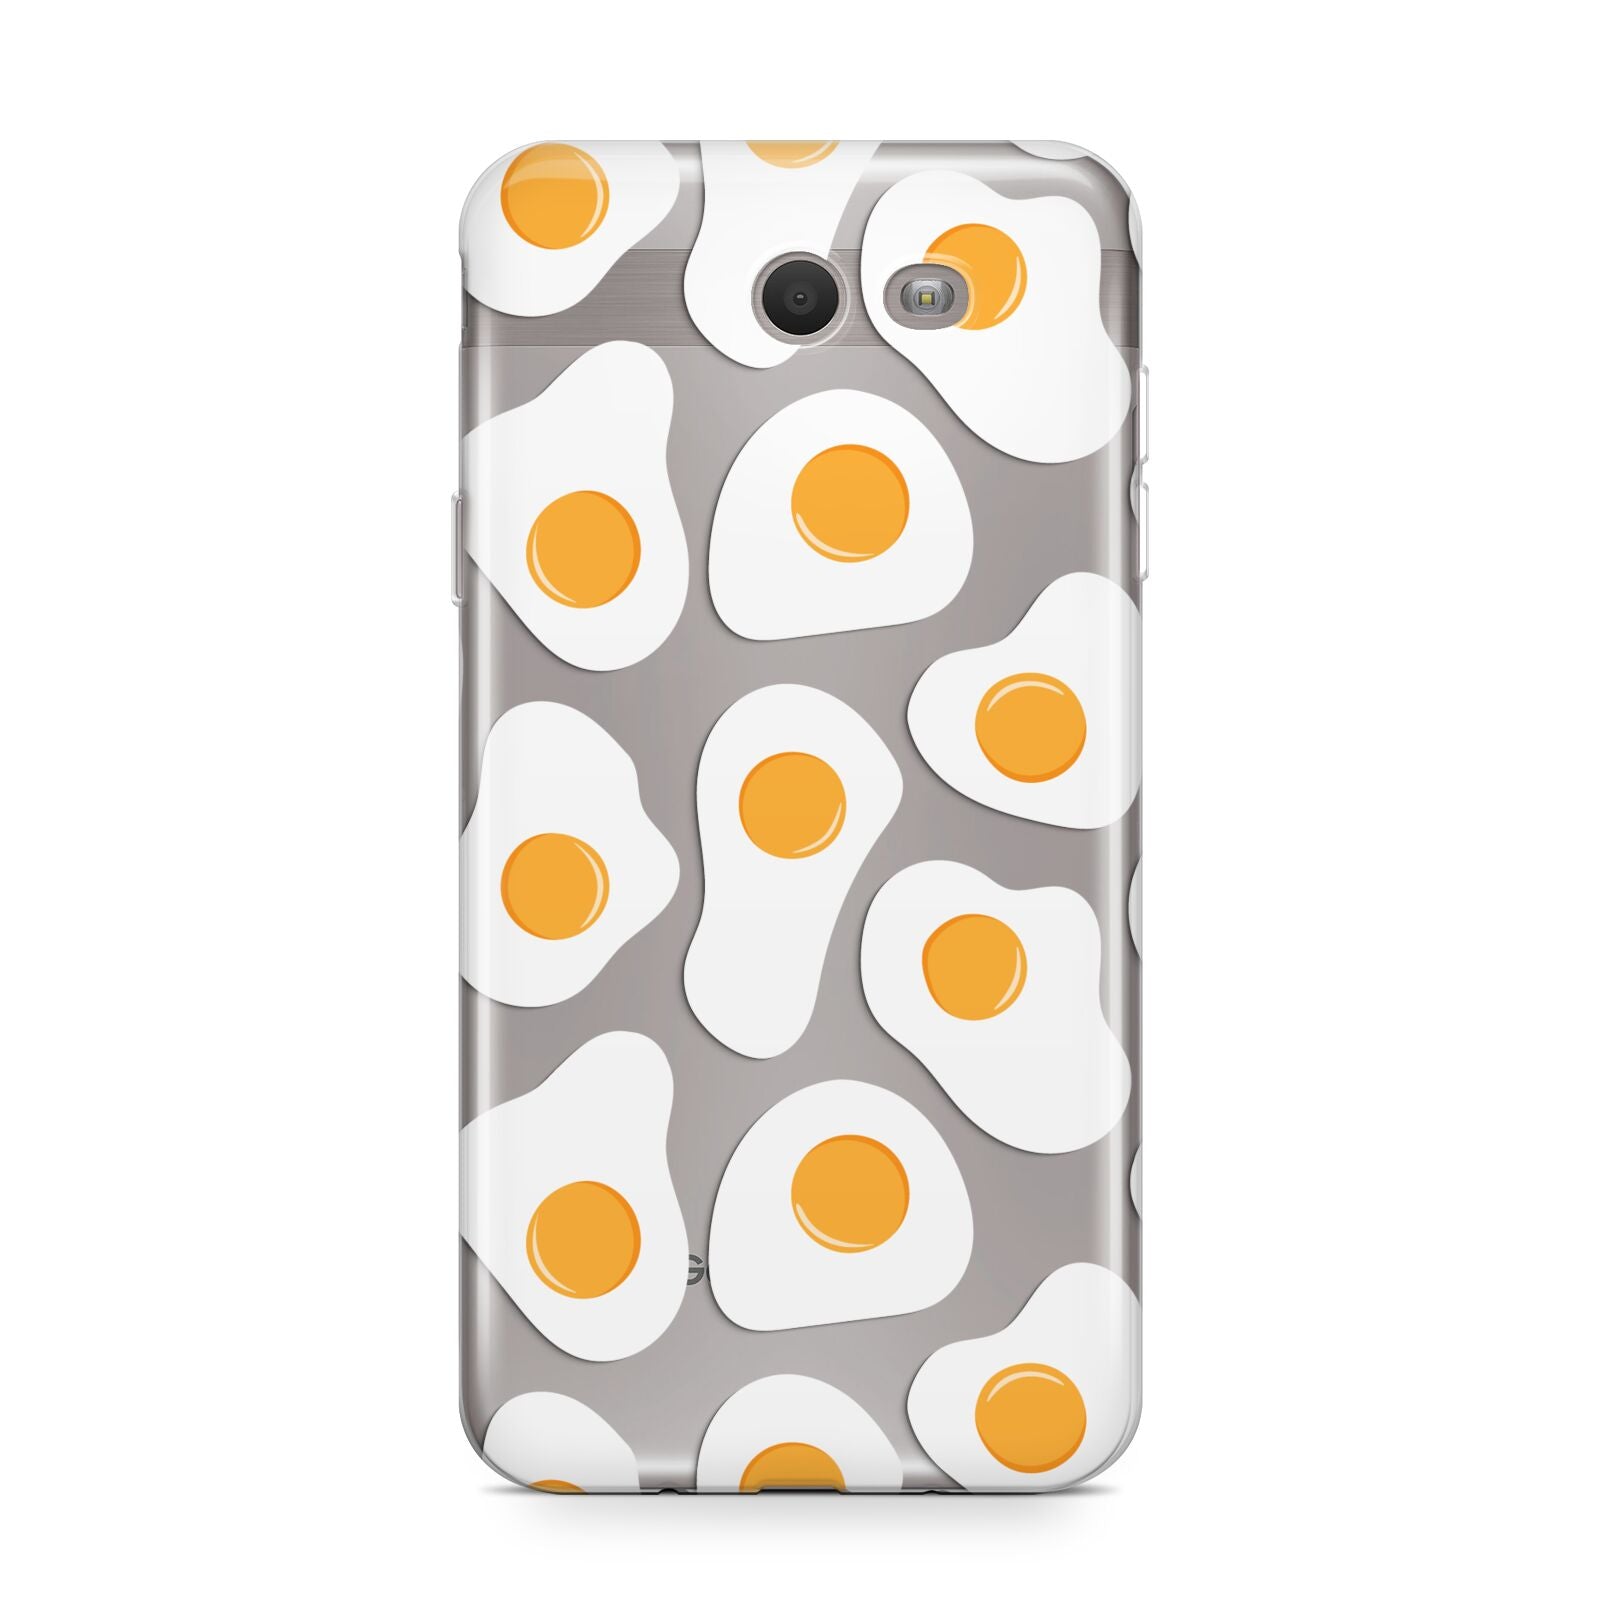 Fried Egg Samsung Galaxy J7 2017 Case